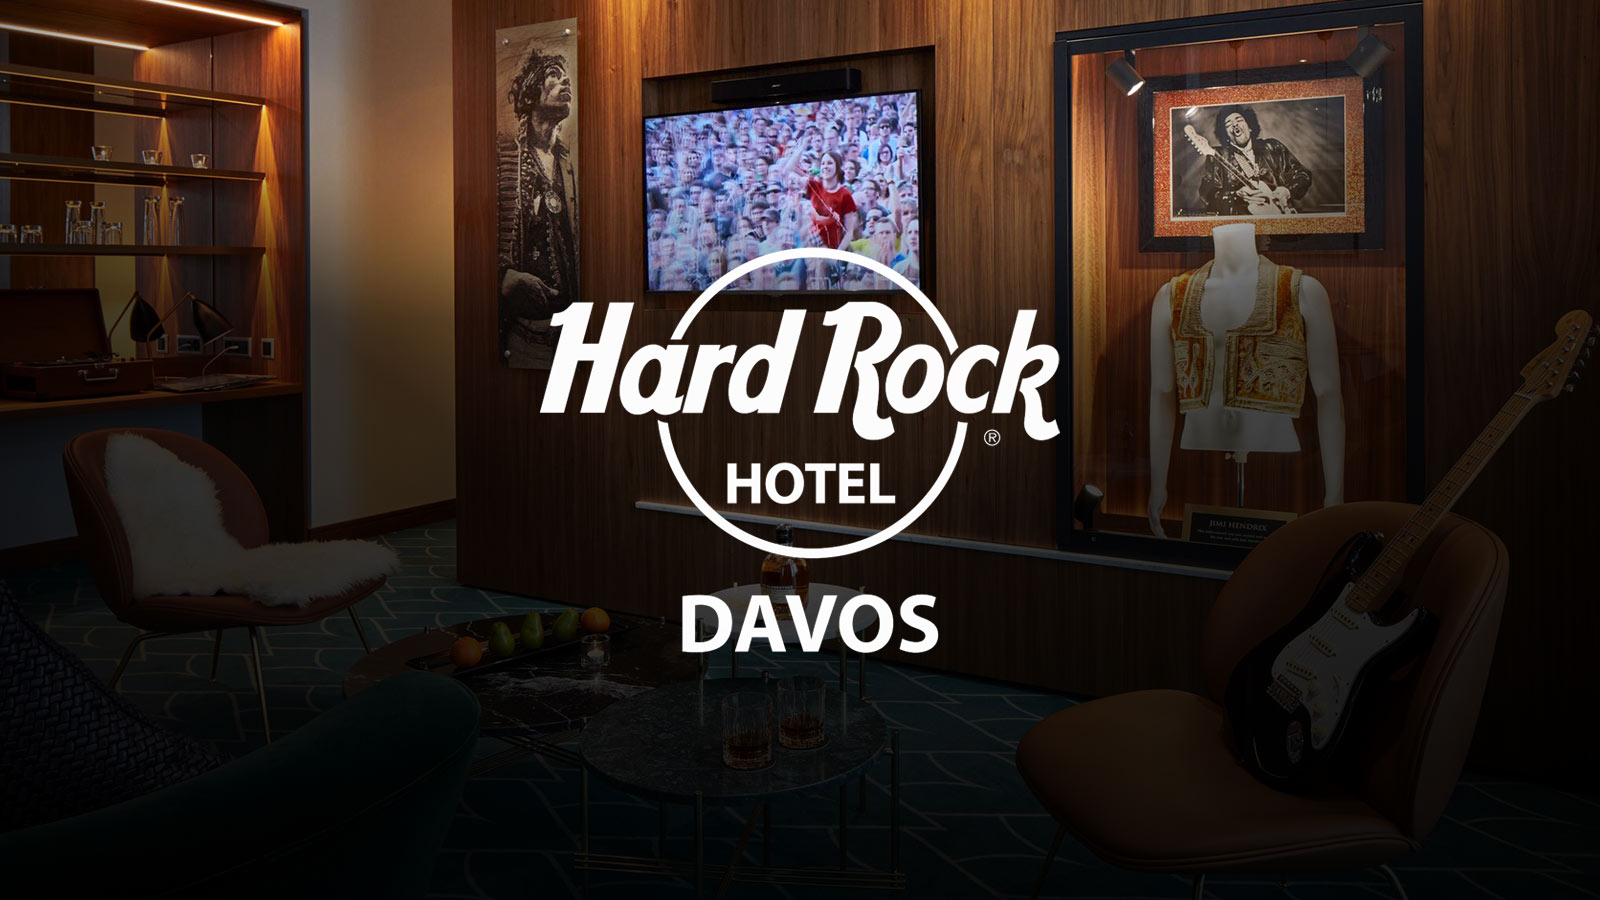 Hard-Rock-Hotel-Davos-logo